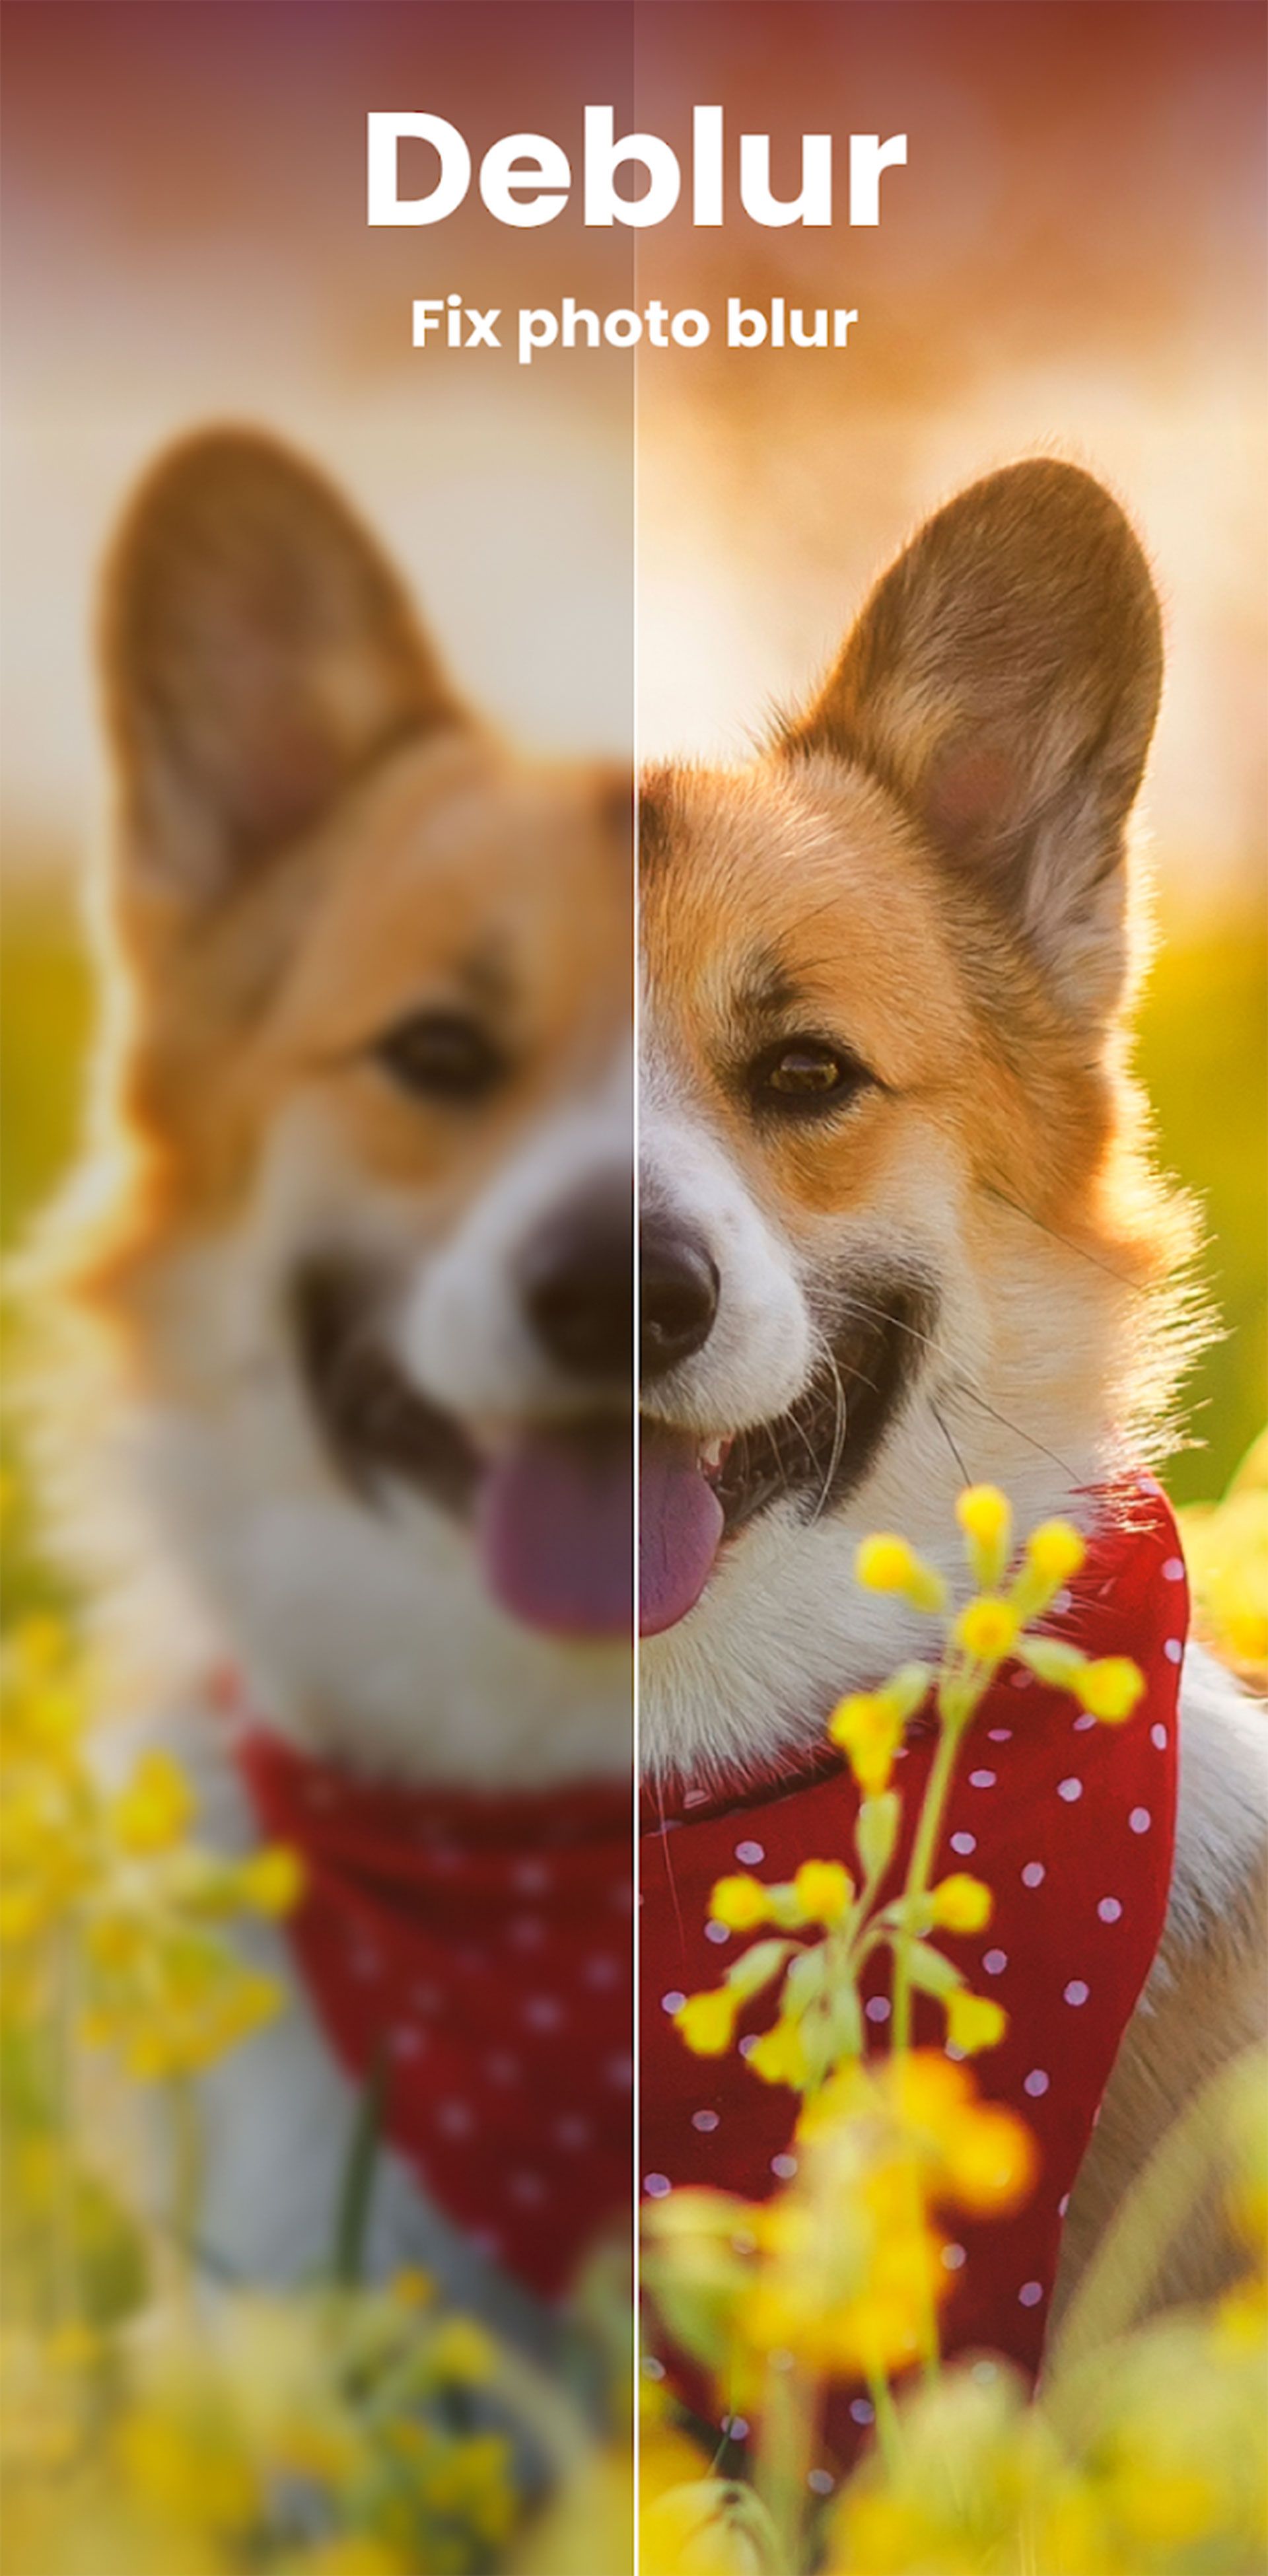 سگی خندان در باغ گل در حال نگاه کردن به دوربین